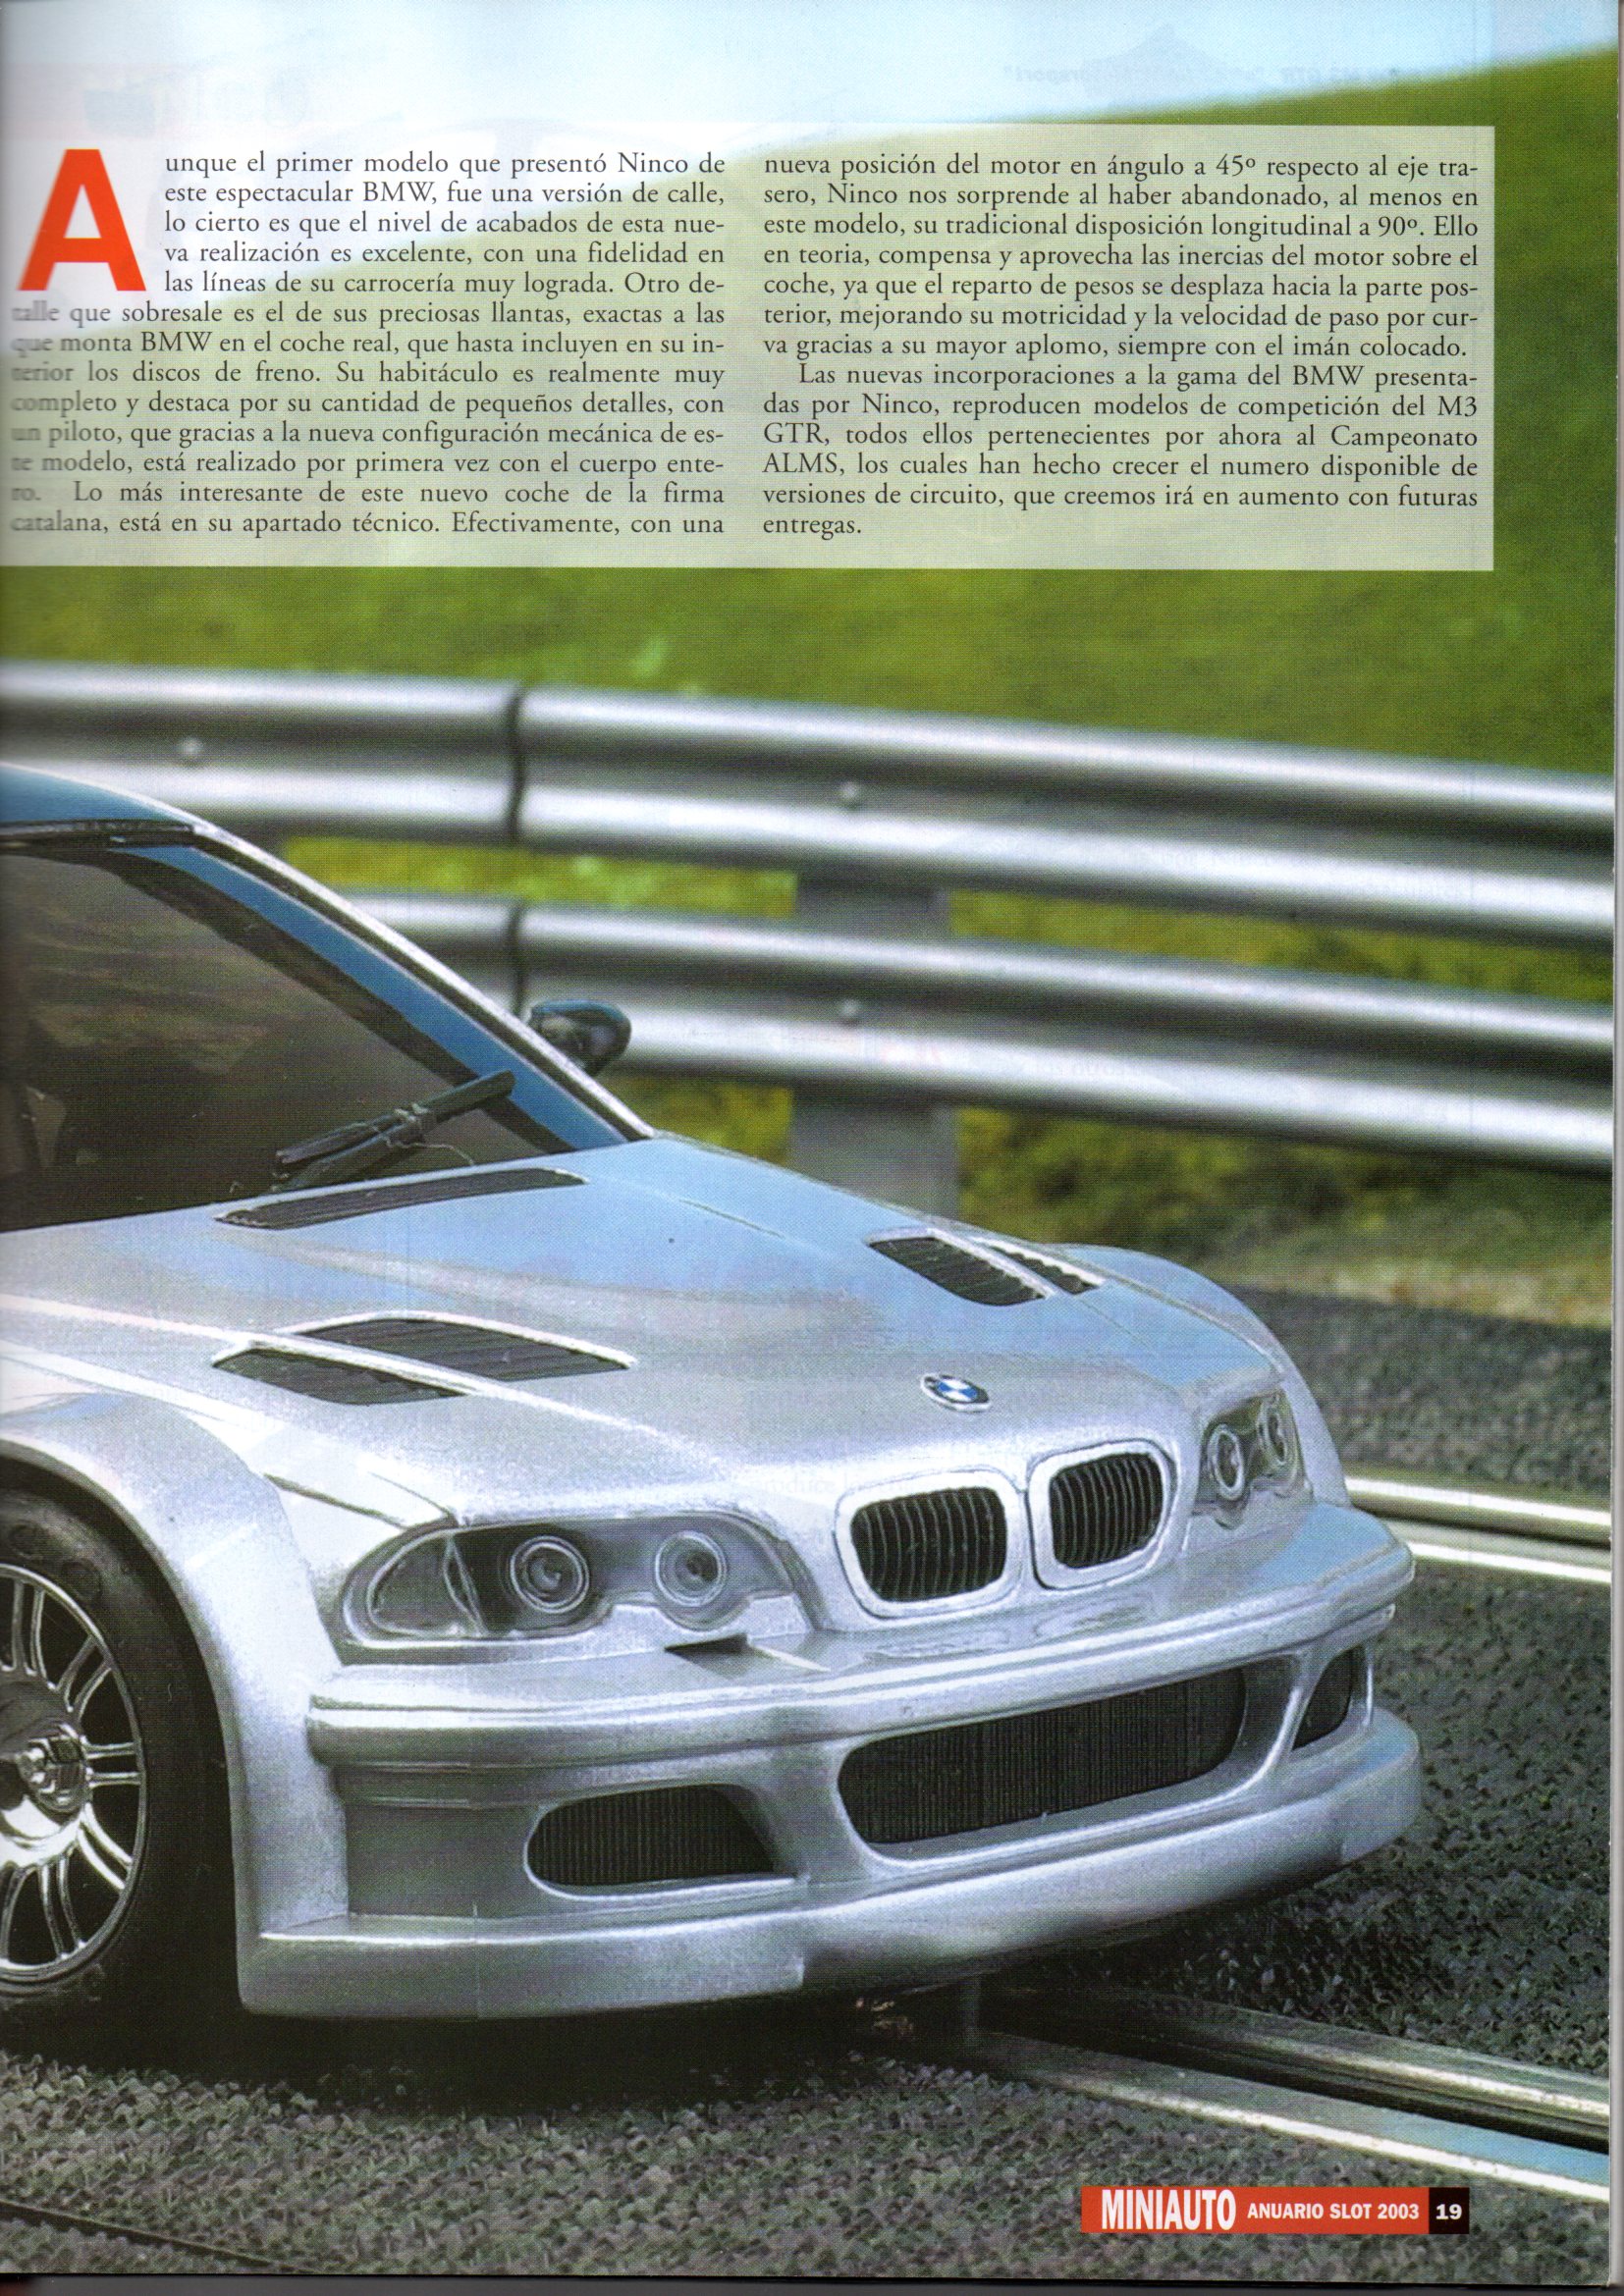 BMW m3 GTR (50335